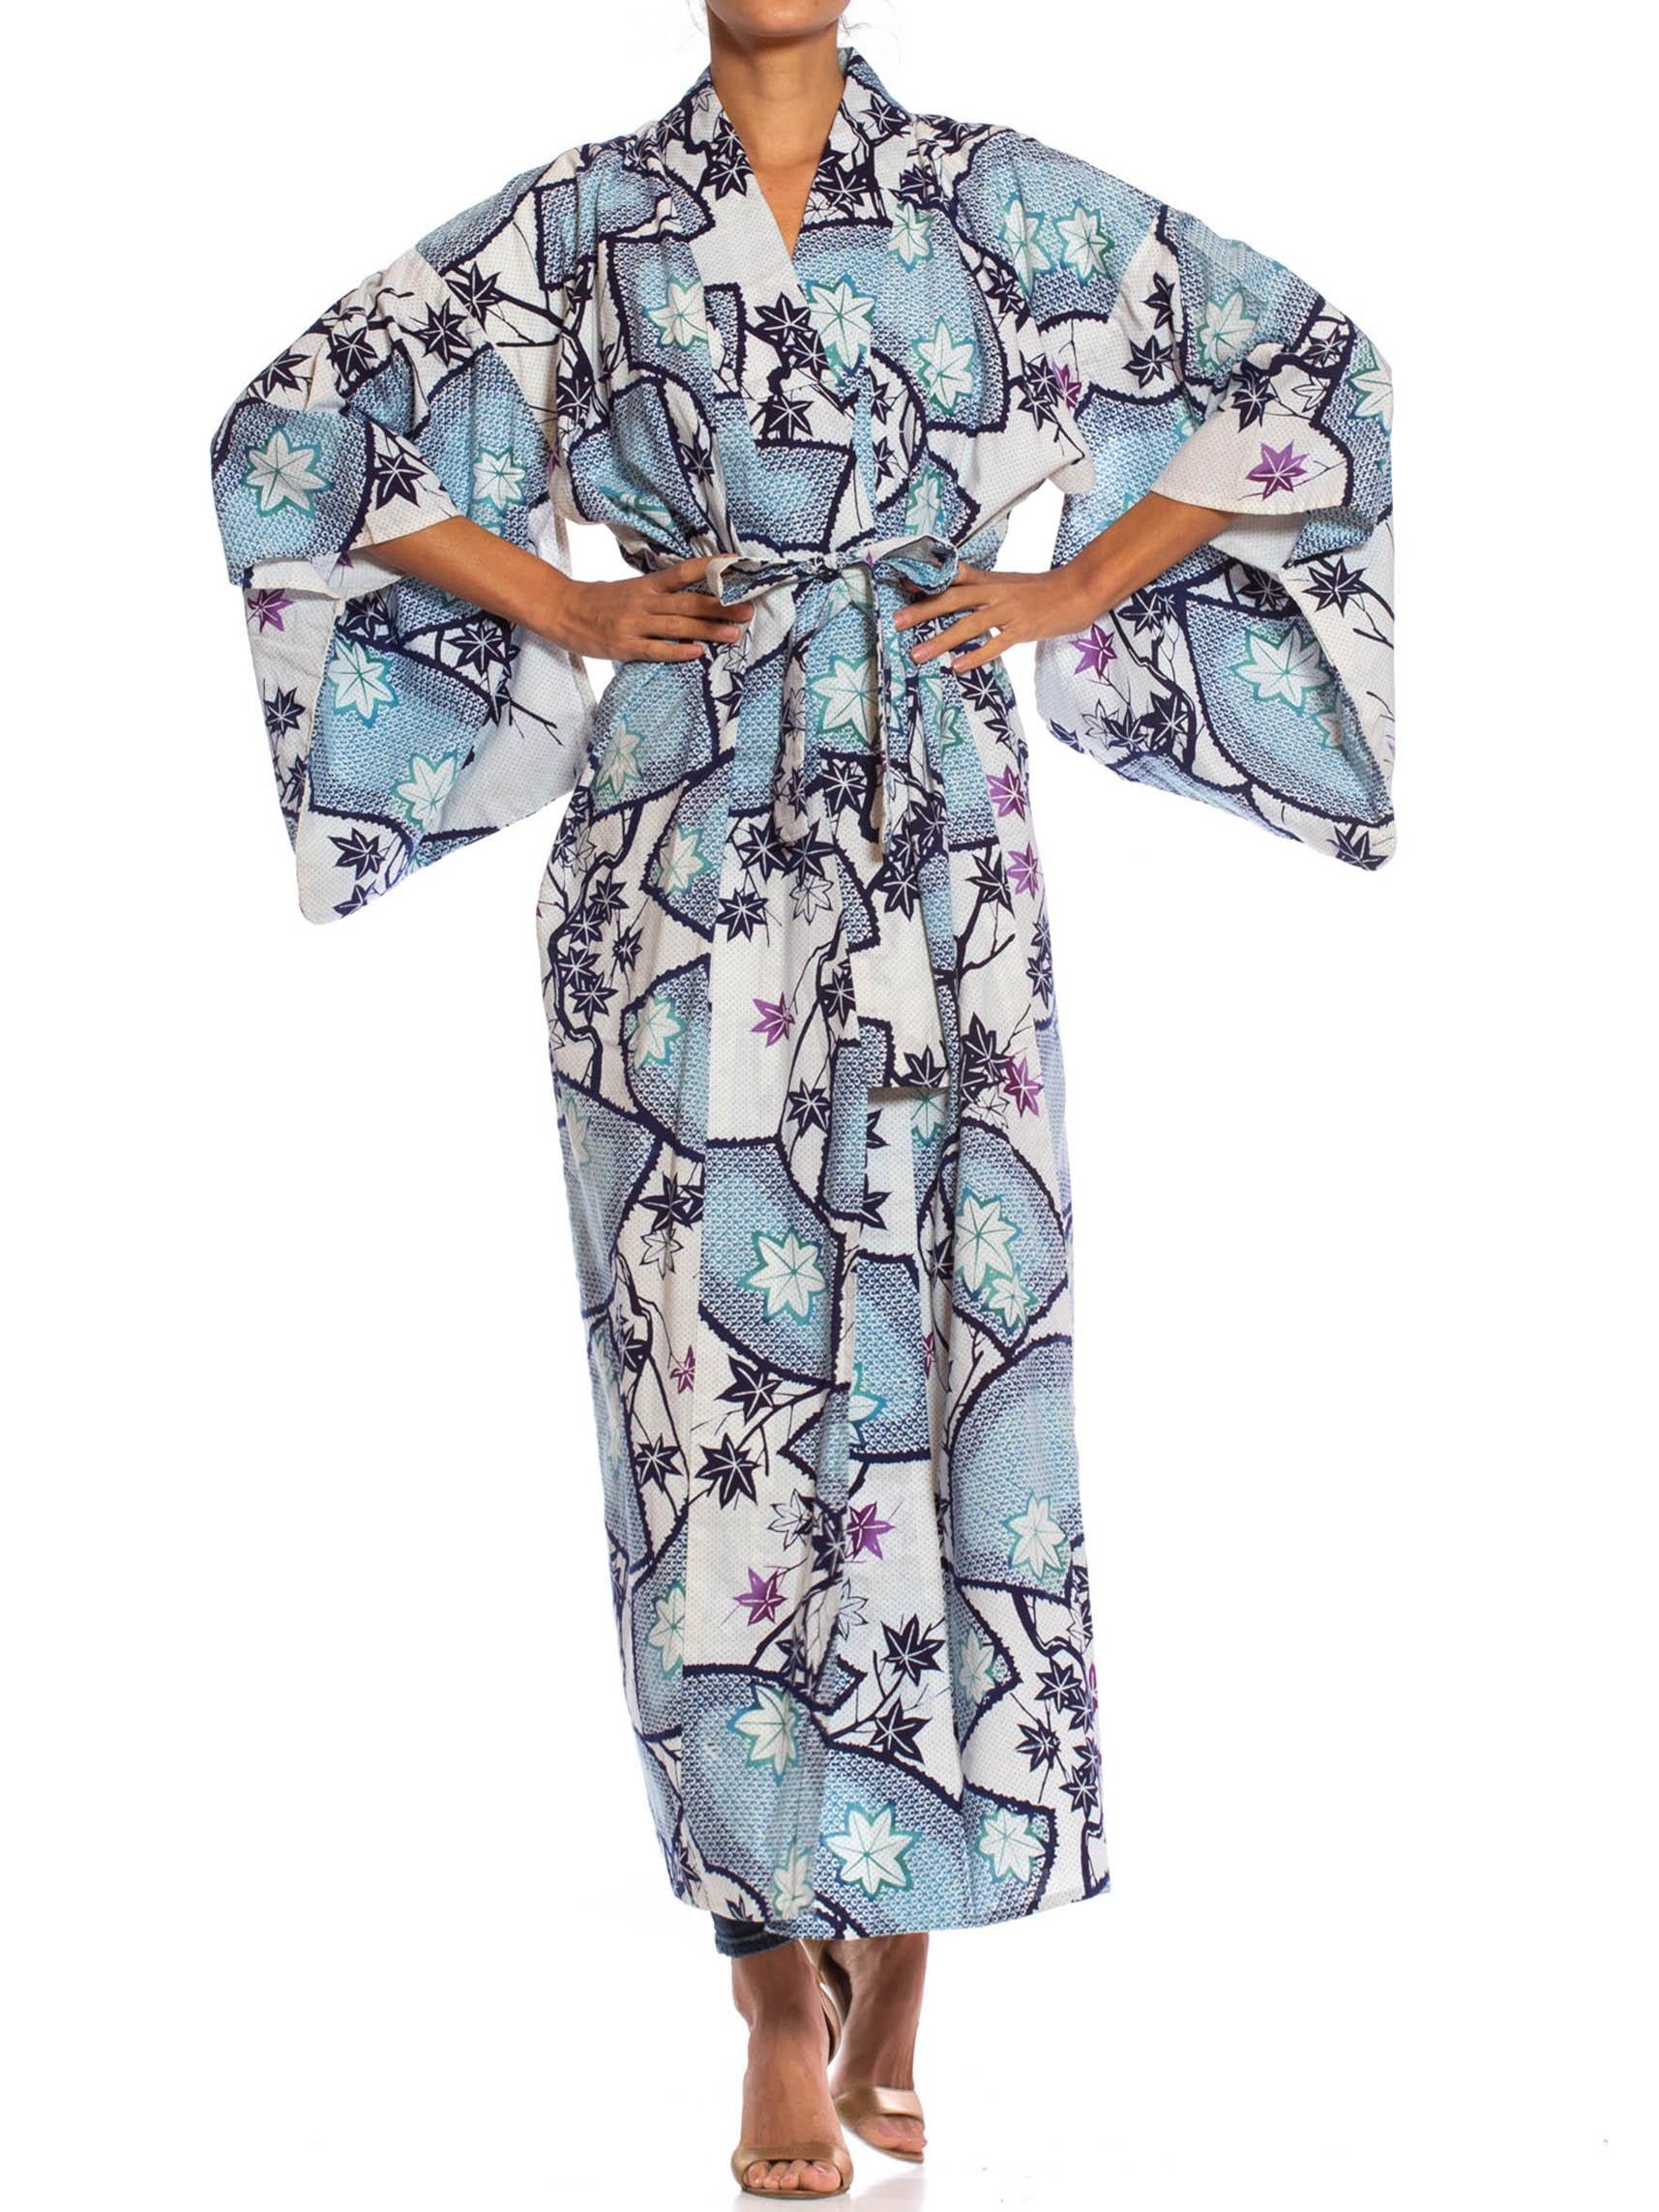 blue and white kimono